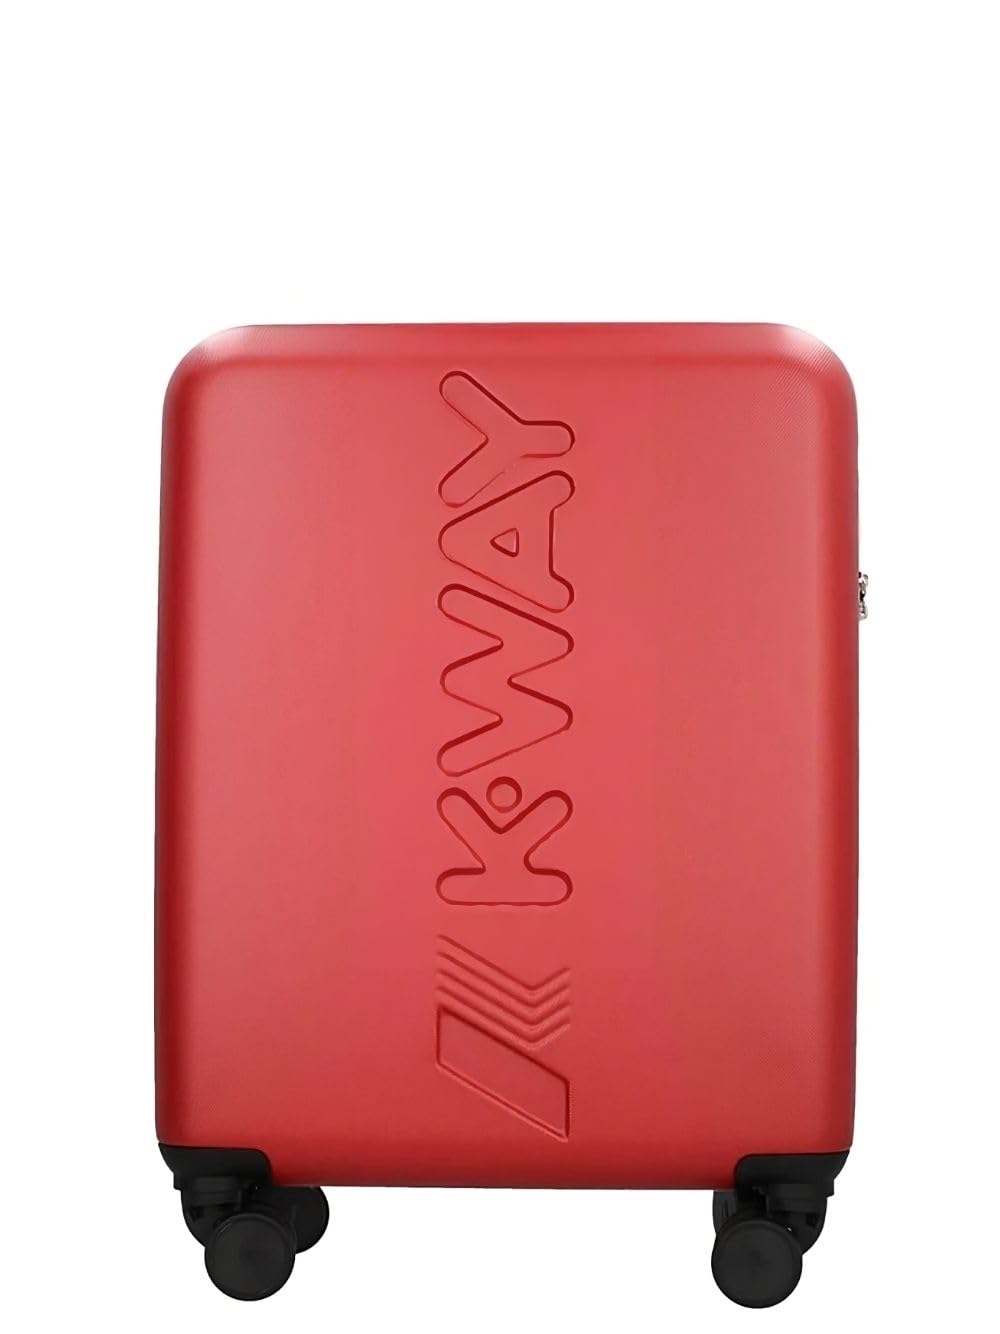 K-way K-AIR Hartschalenkoffer für unterwegs, perfekte Größe für den Transport in der Kabine. Das Zubehör verfügt über vier Rollen für maximale Bewegungsfreiheit, zwei Taschen mit Reißverschluss am